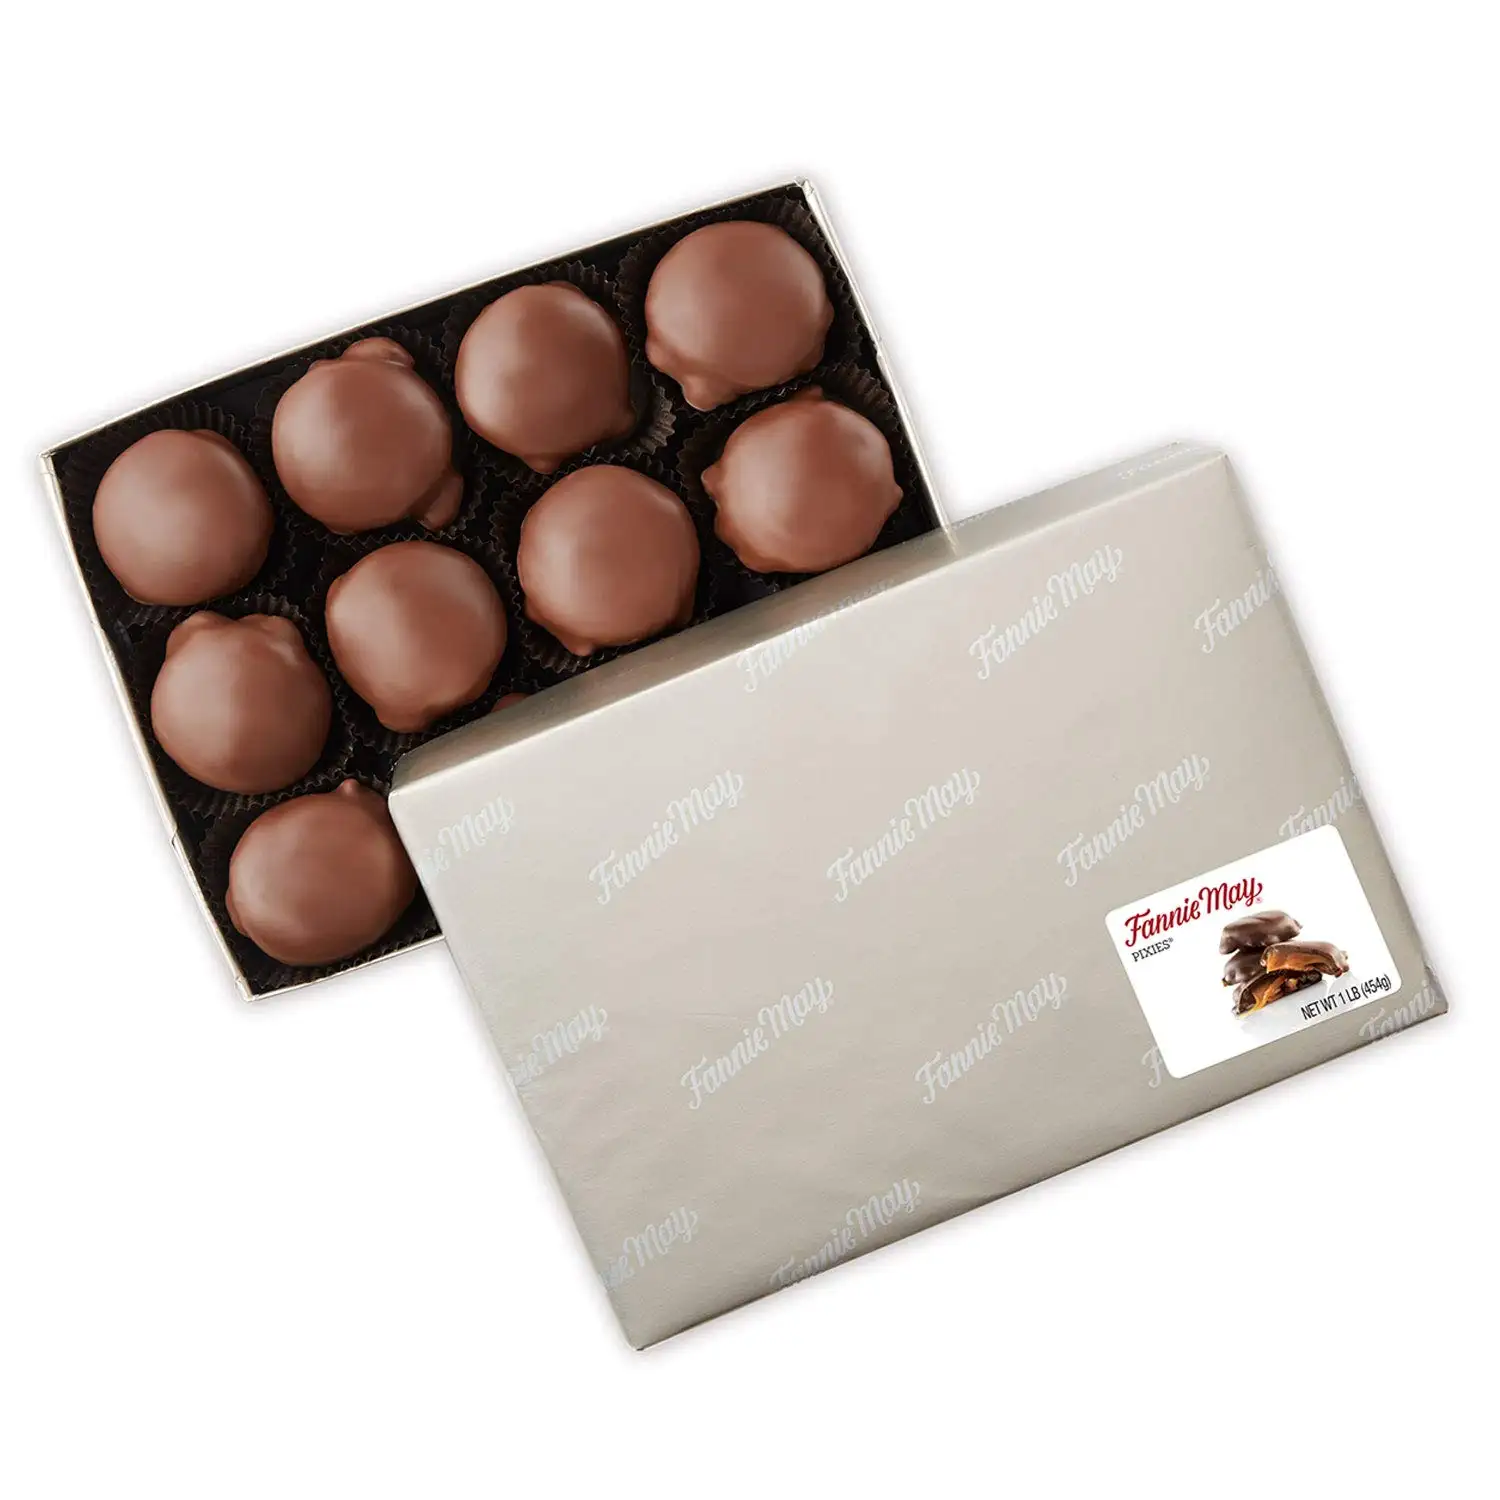 Fannie May S'mores Snack Mix - 5oz /Fannie può assortito cioccolato fondente caramella di San Valentino confezione regalo 8.3 oz